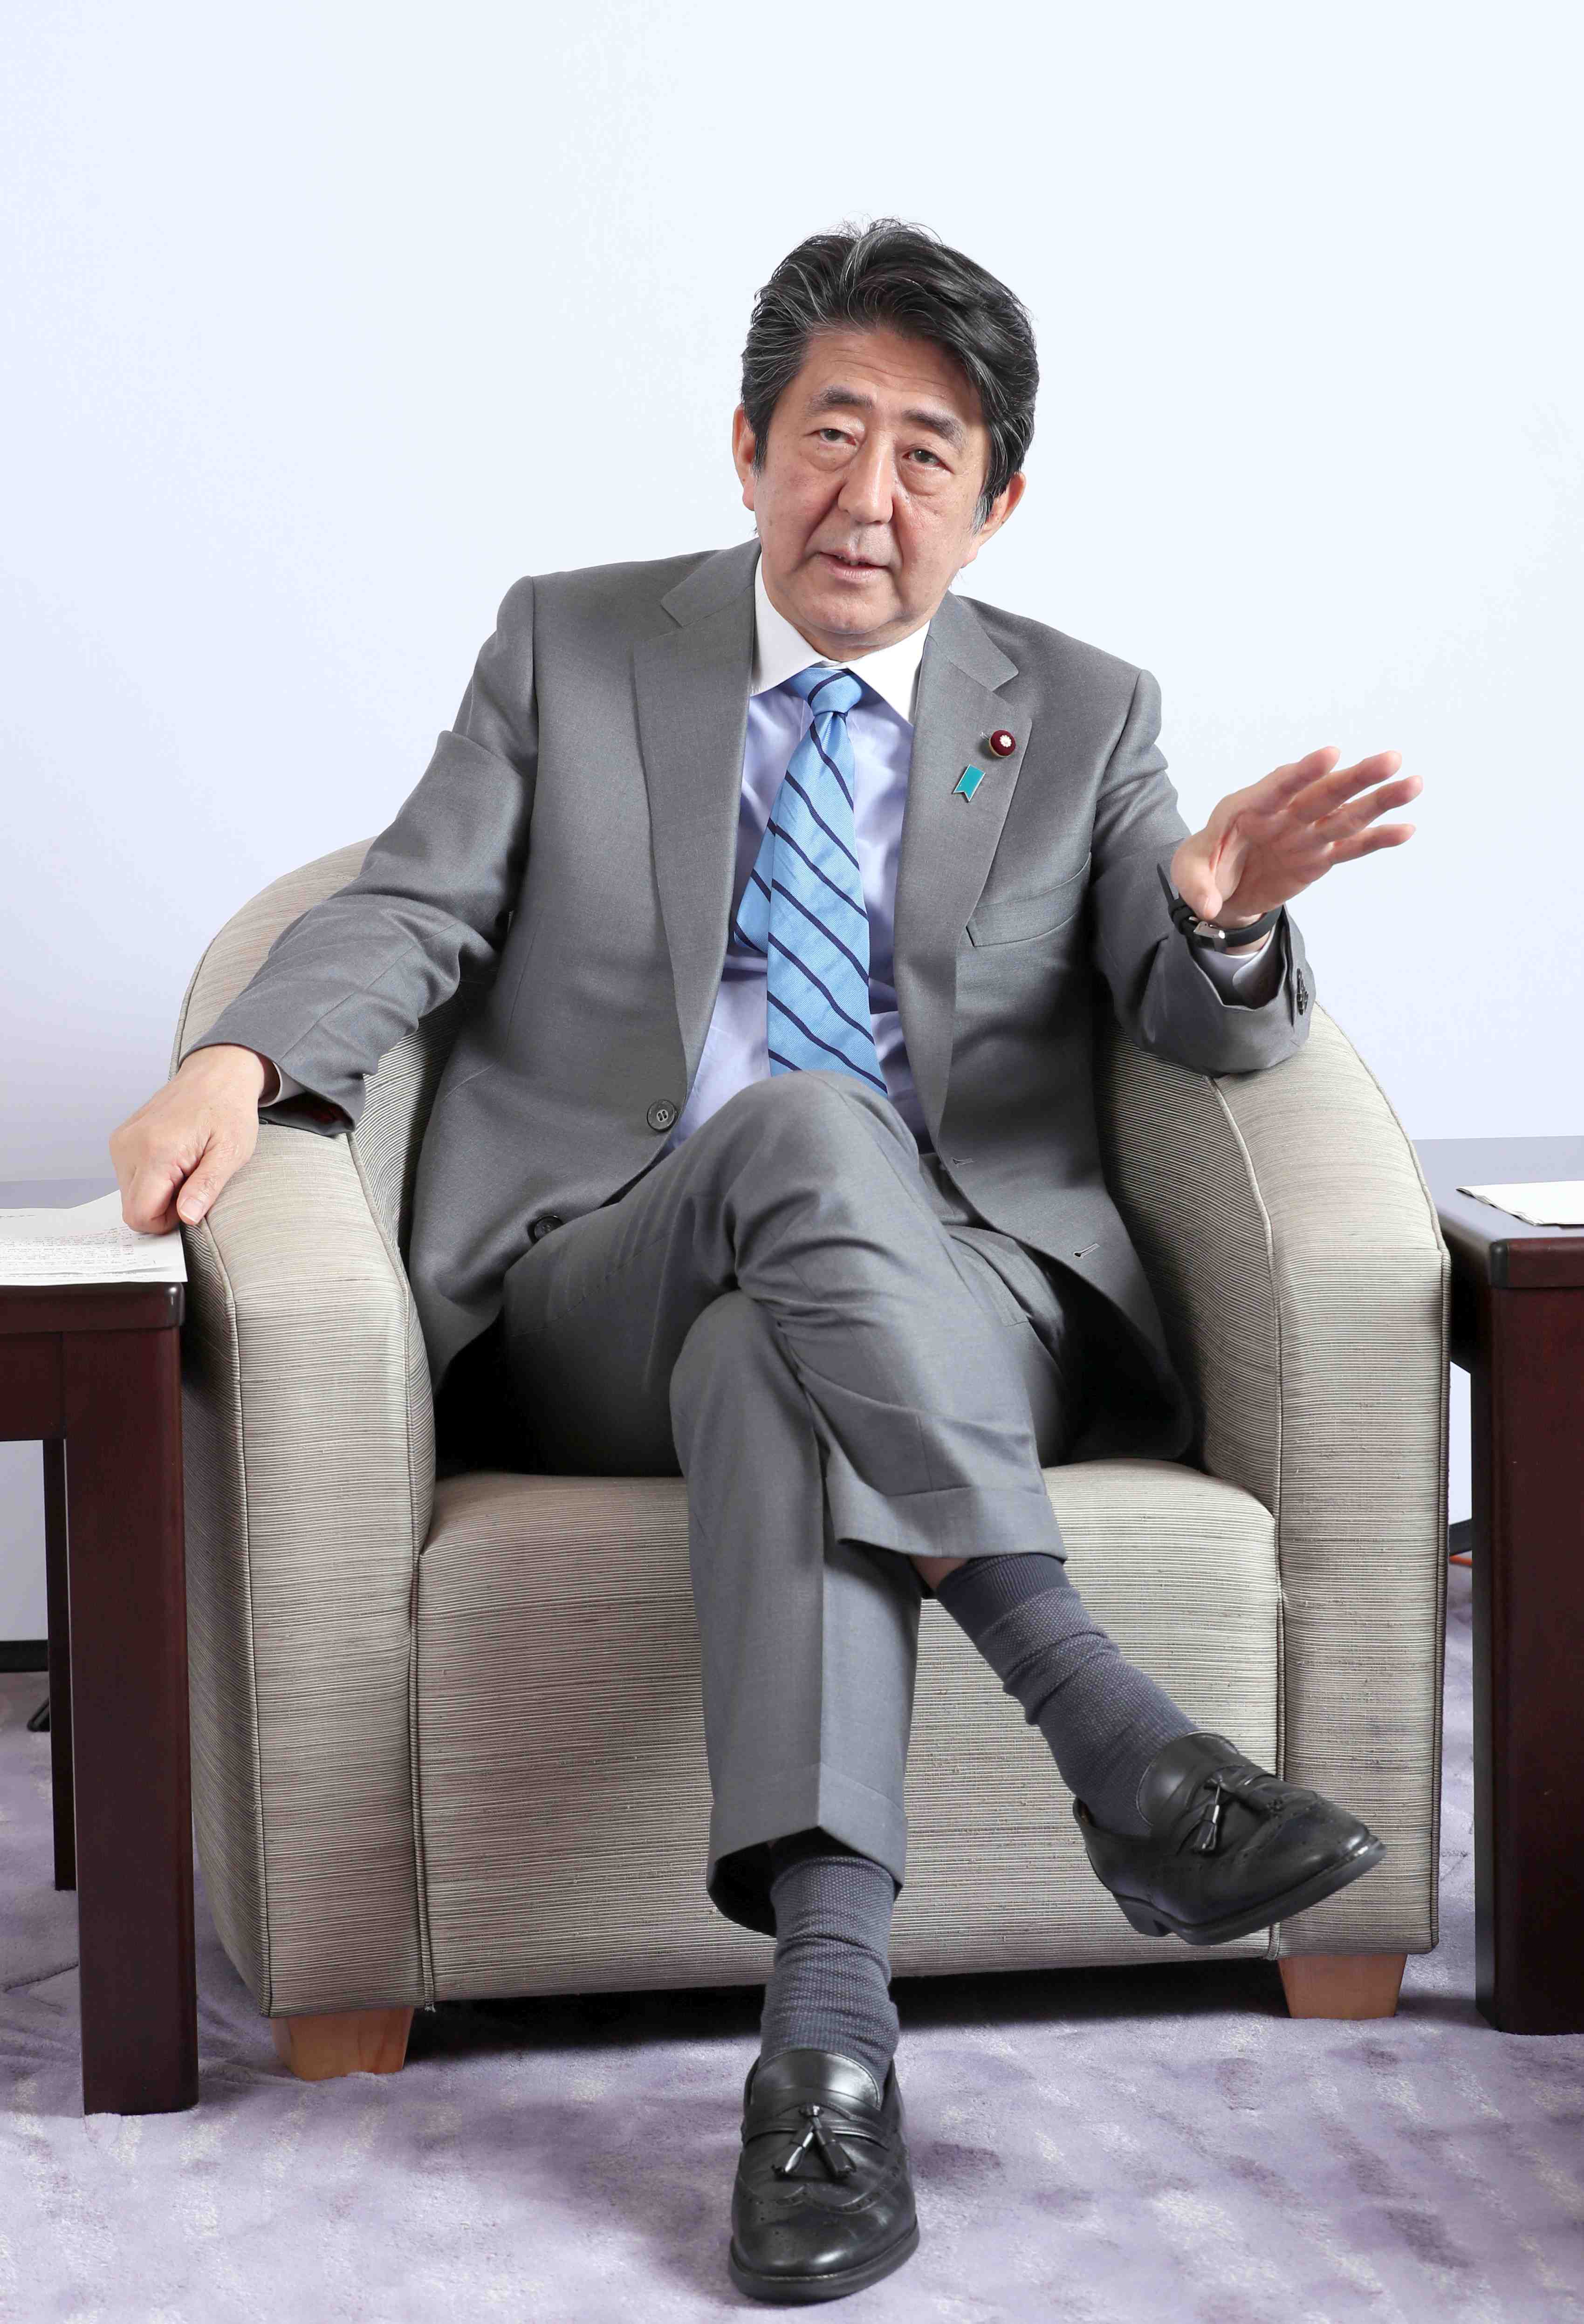 Interview with PM Shinzo Abe on Coronavirus